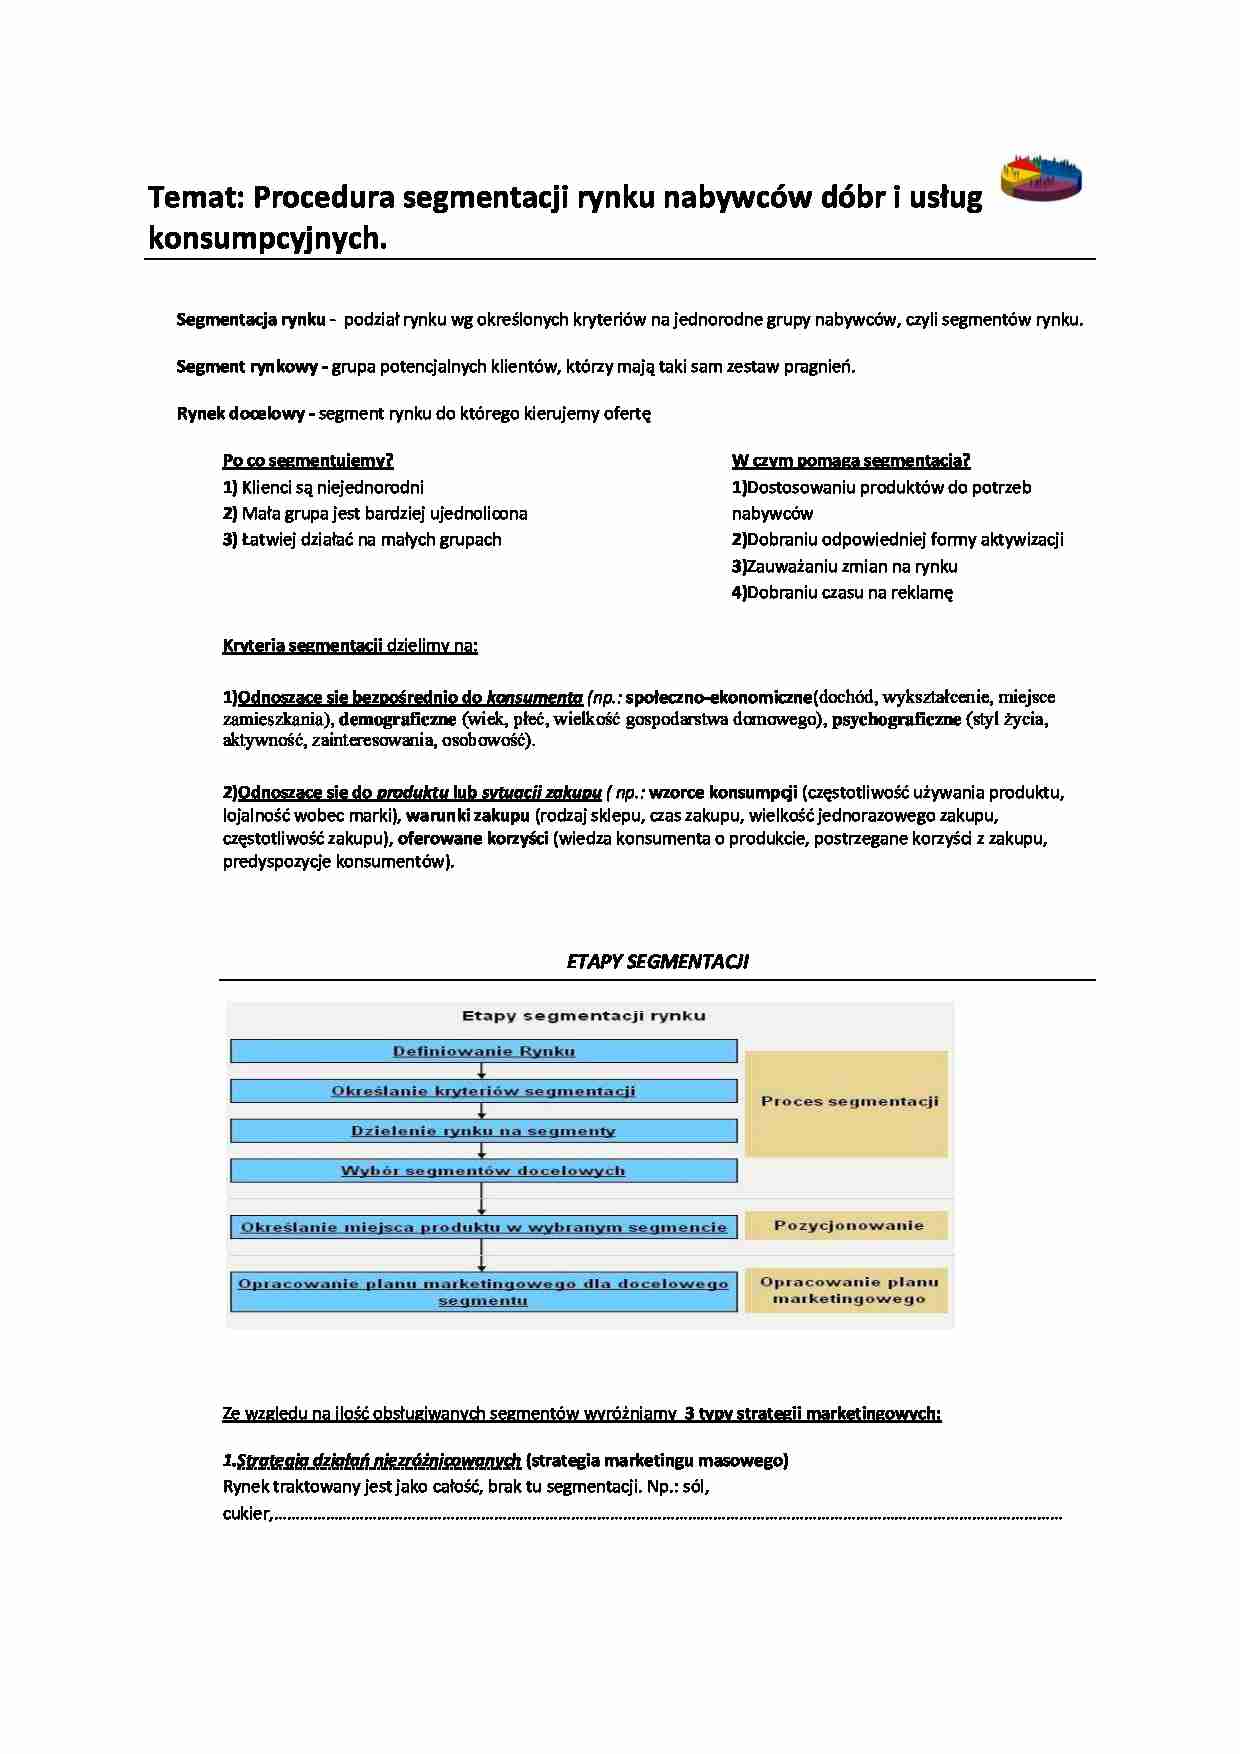 Procedura segmentacji rynku nabywców dóbr i usług  konsumpcyjnych - wkład z podstaw marketingu - strona 1